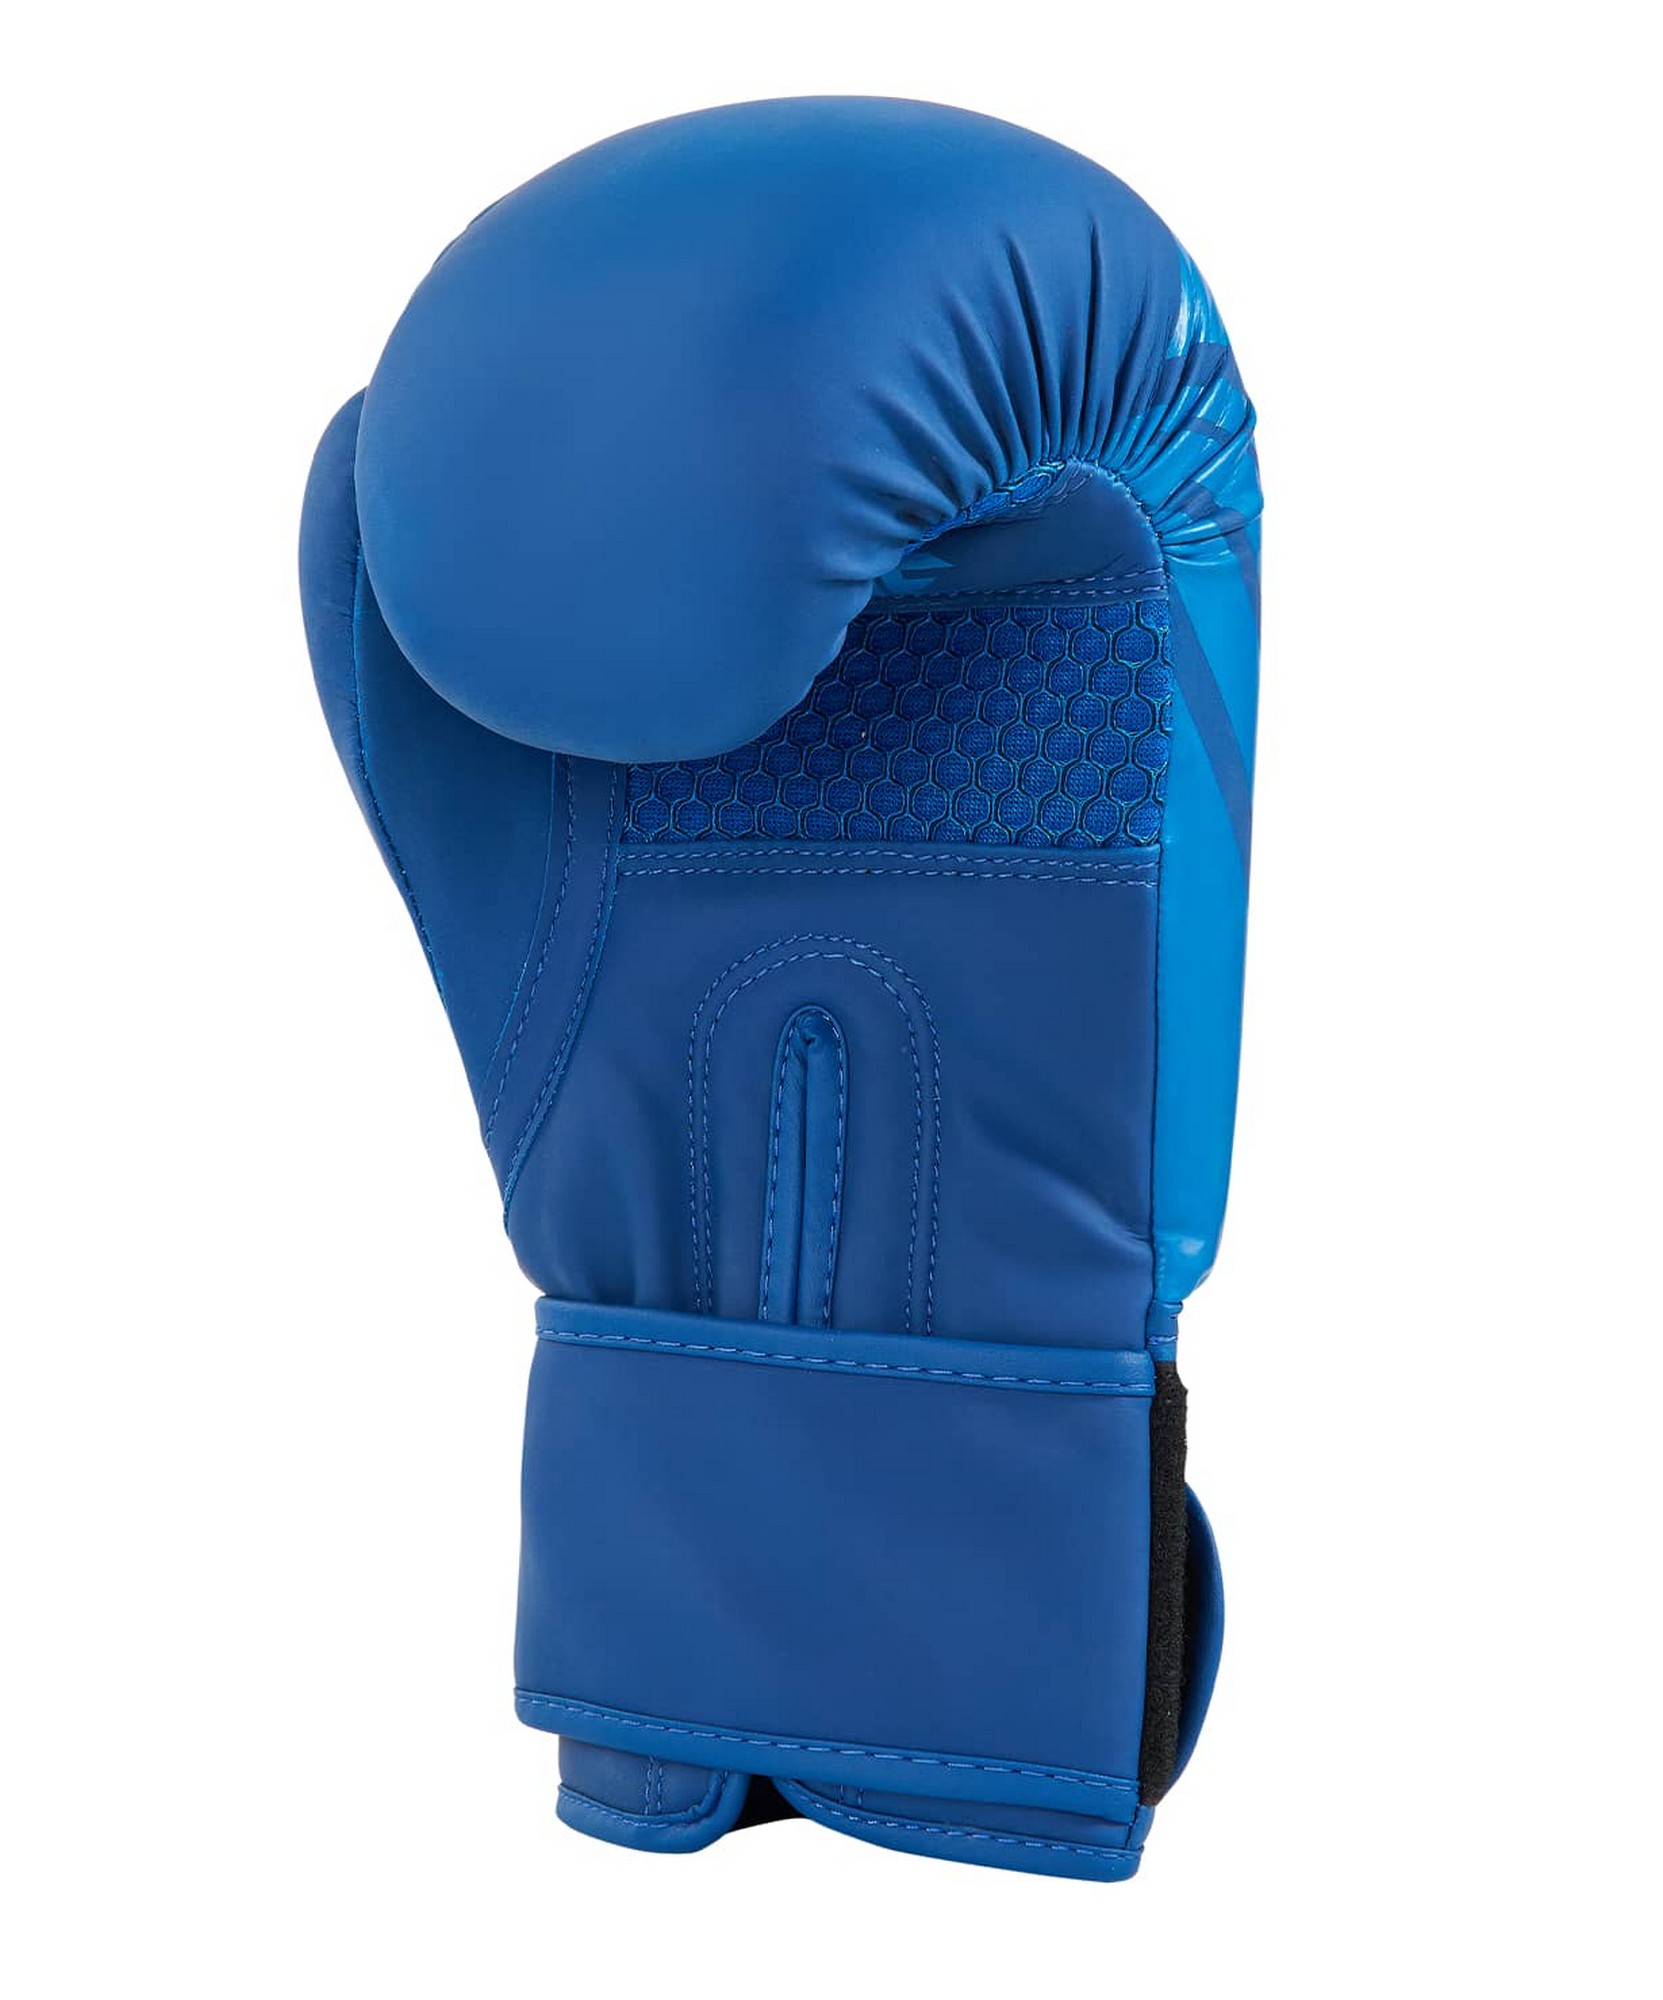 Перчатки боксерские Insane ORO, ПУ, 10 oz, синий 1663_2000